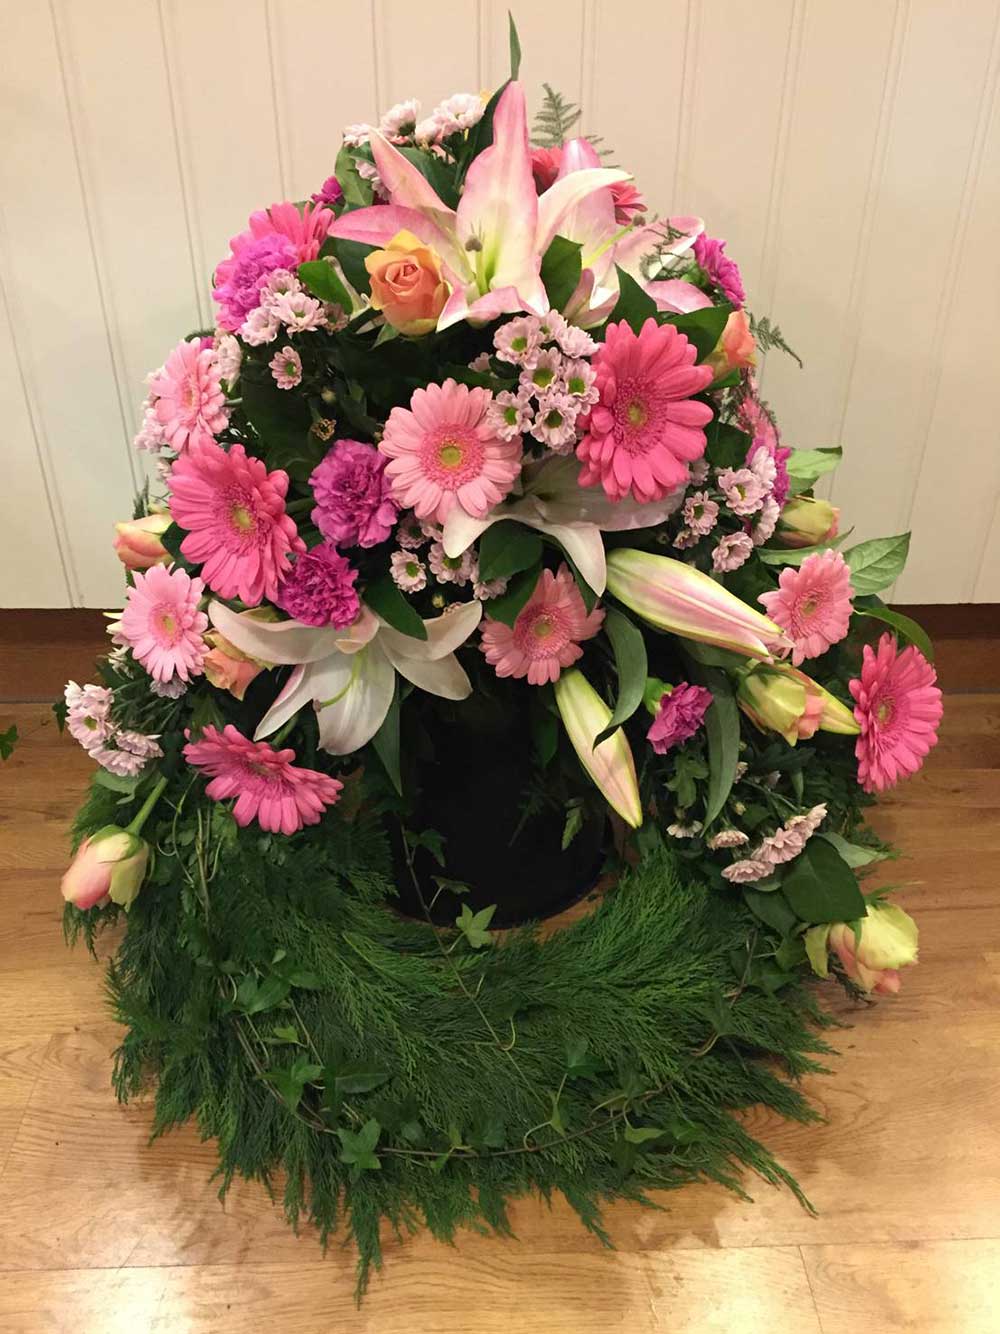 Begravningskrans med rosa liljor och andra rosa blommor